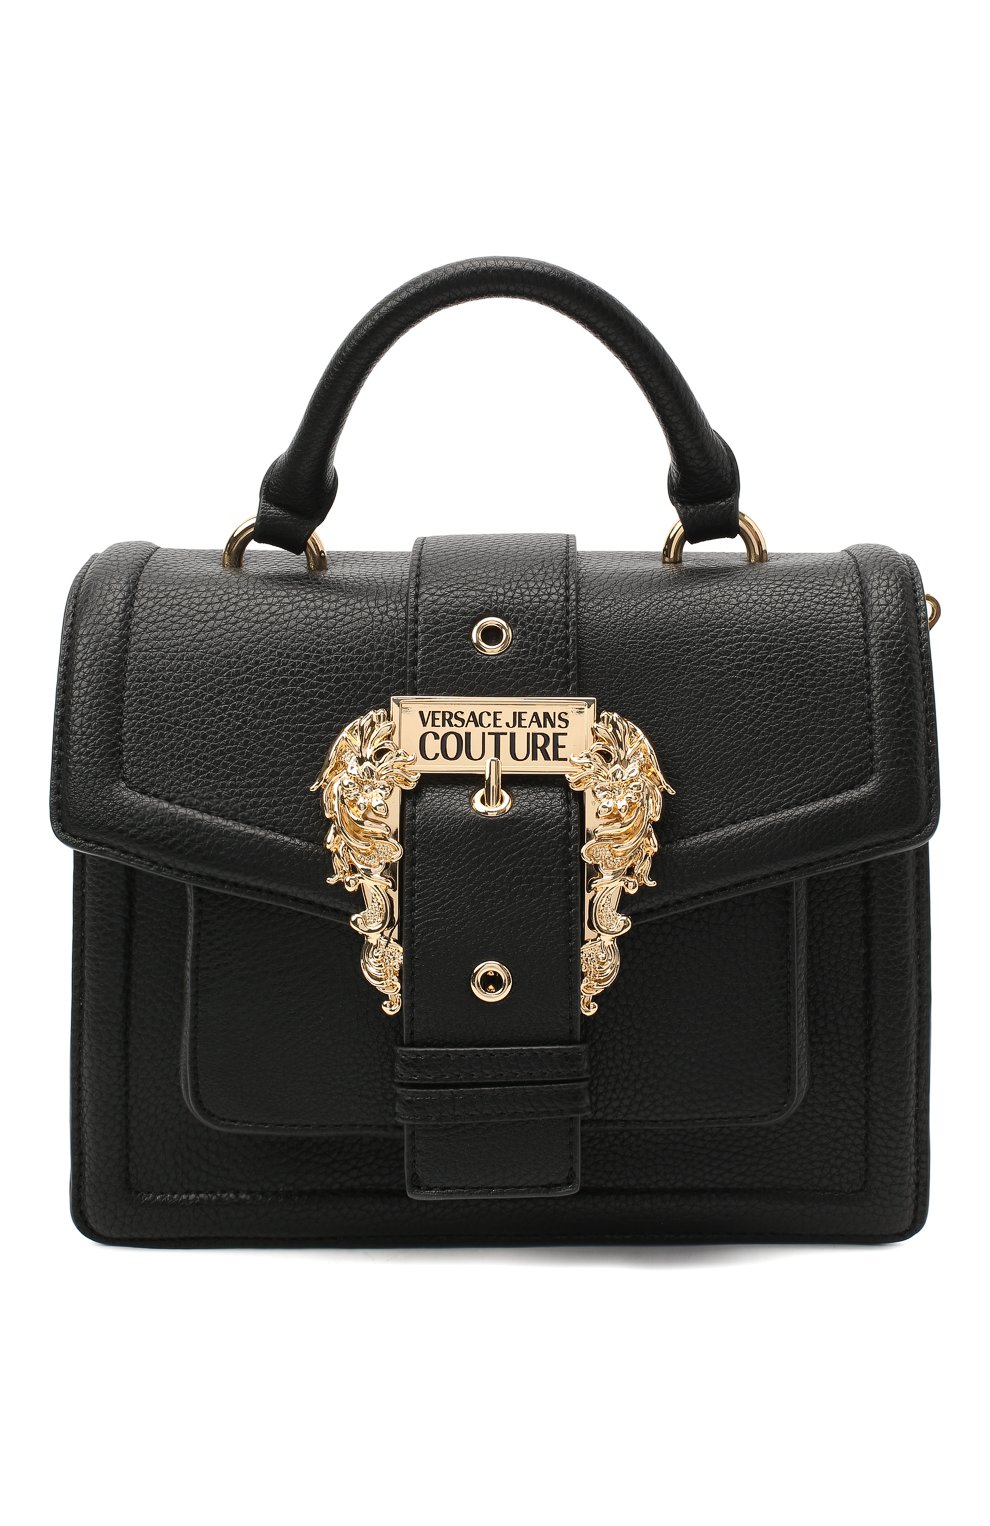 Женская черная сумка VERSACE JEANS COUTURE — купить в интернет-магазине